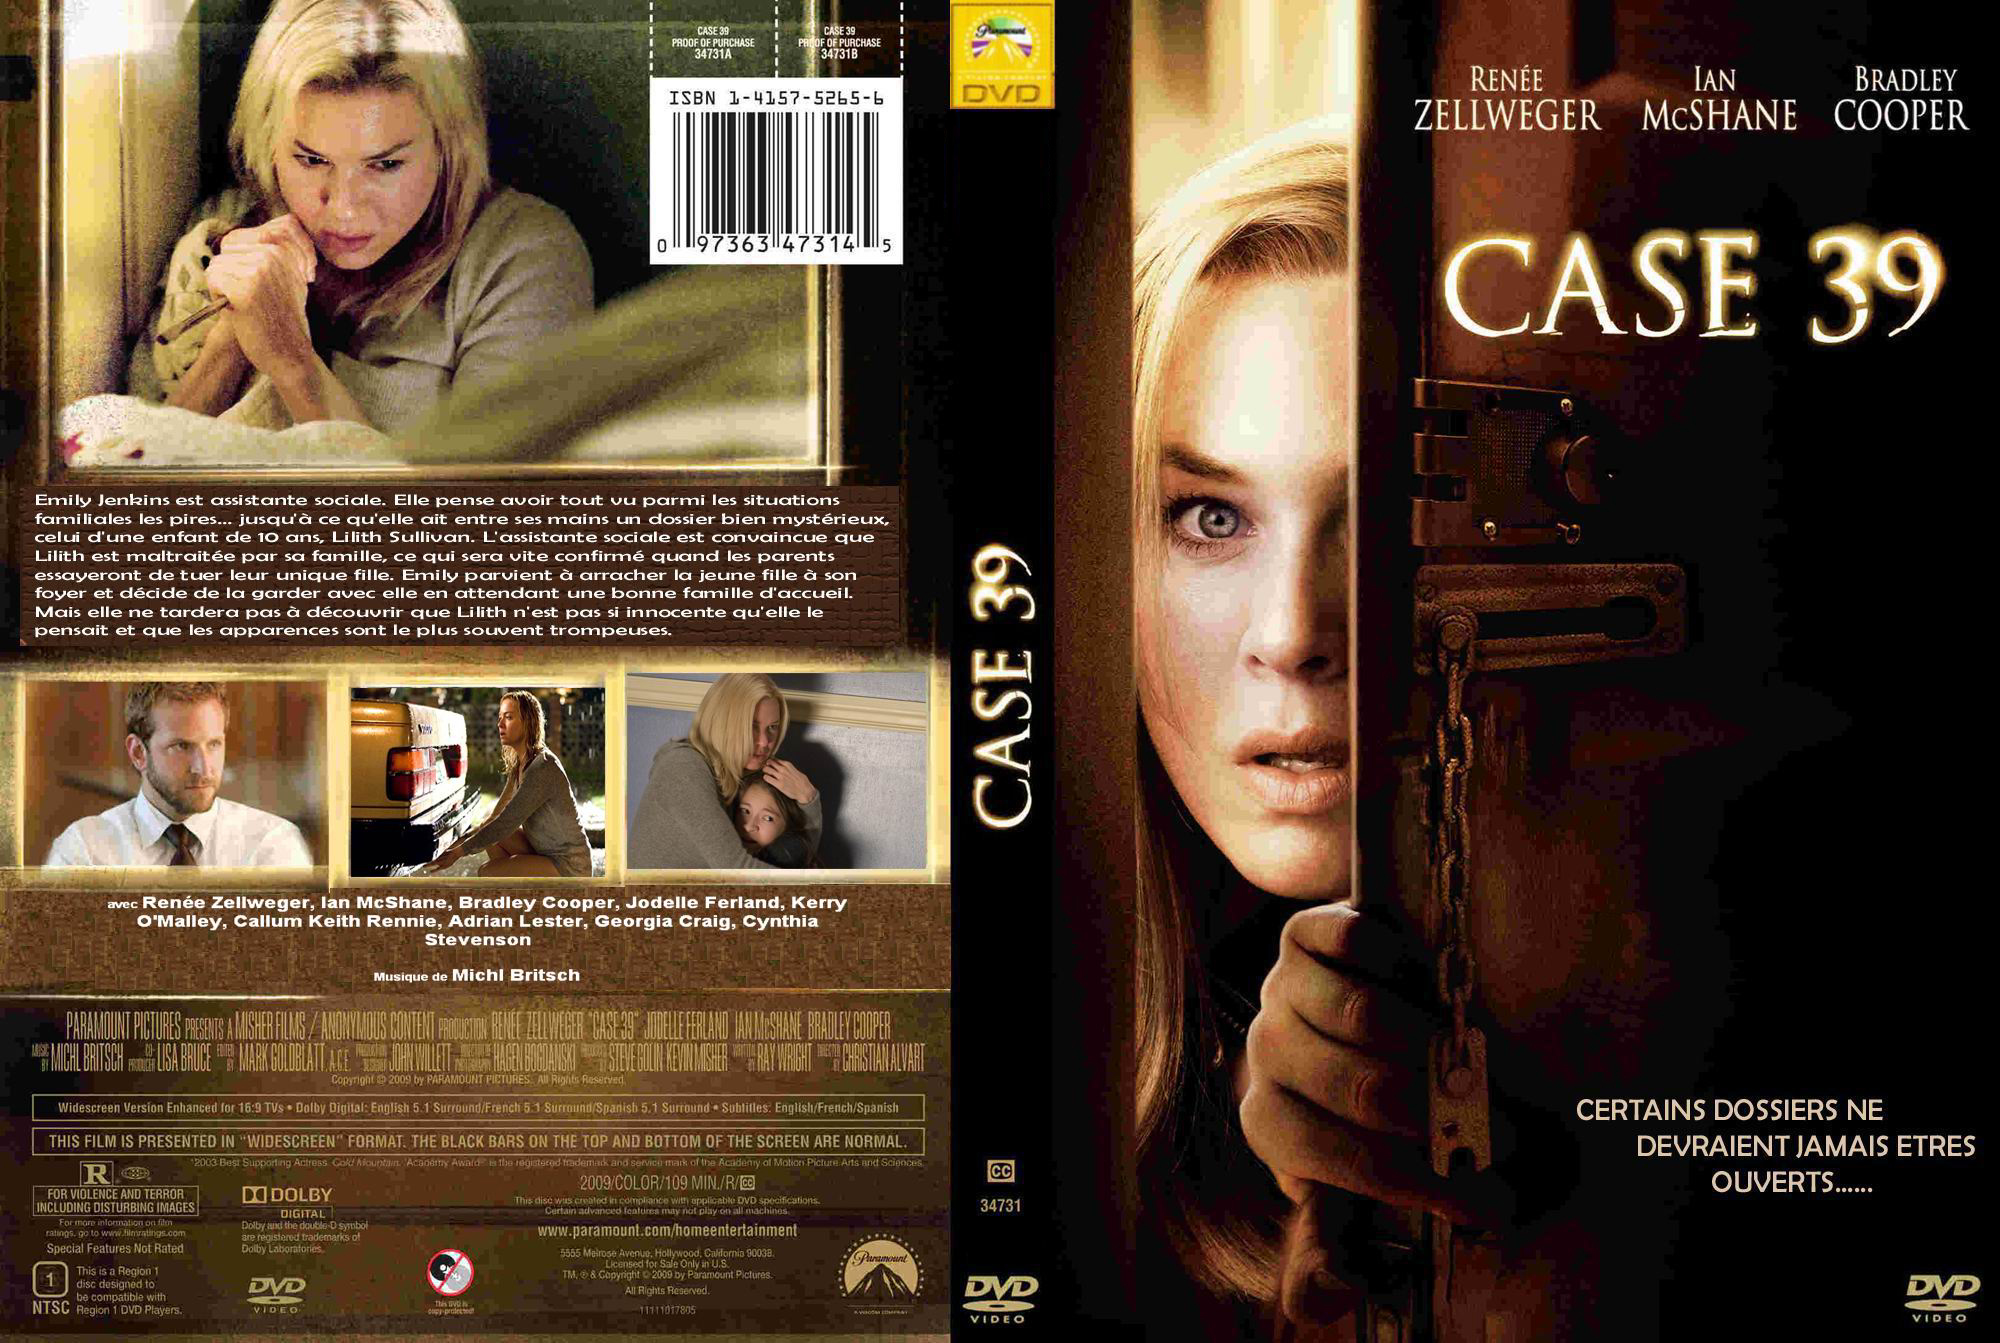 Jaquette DVD de Case 39 custom - Cinéma Passion